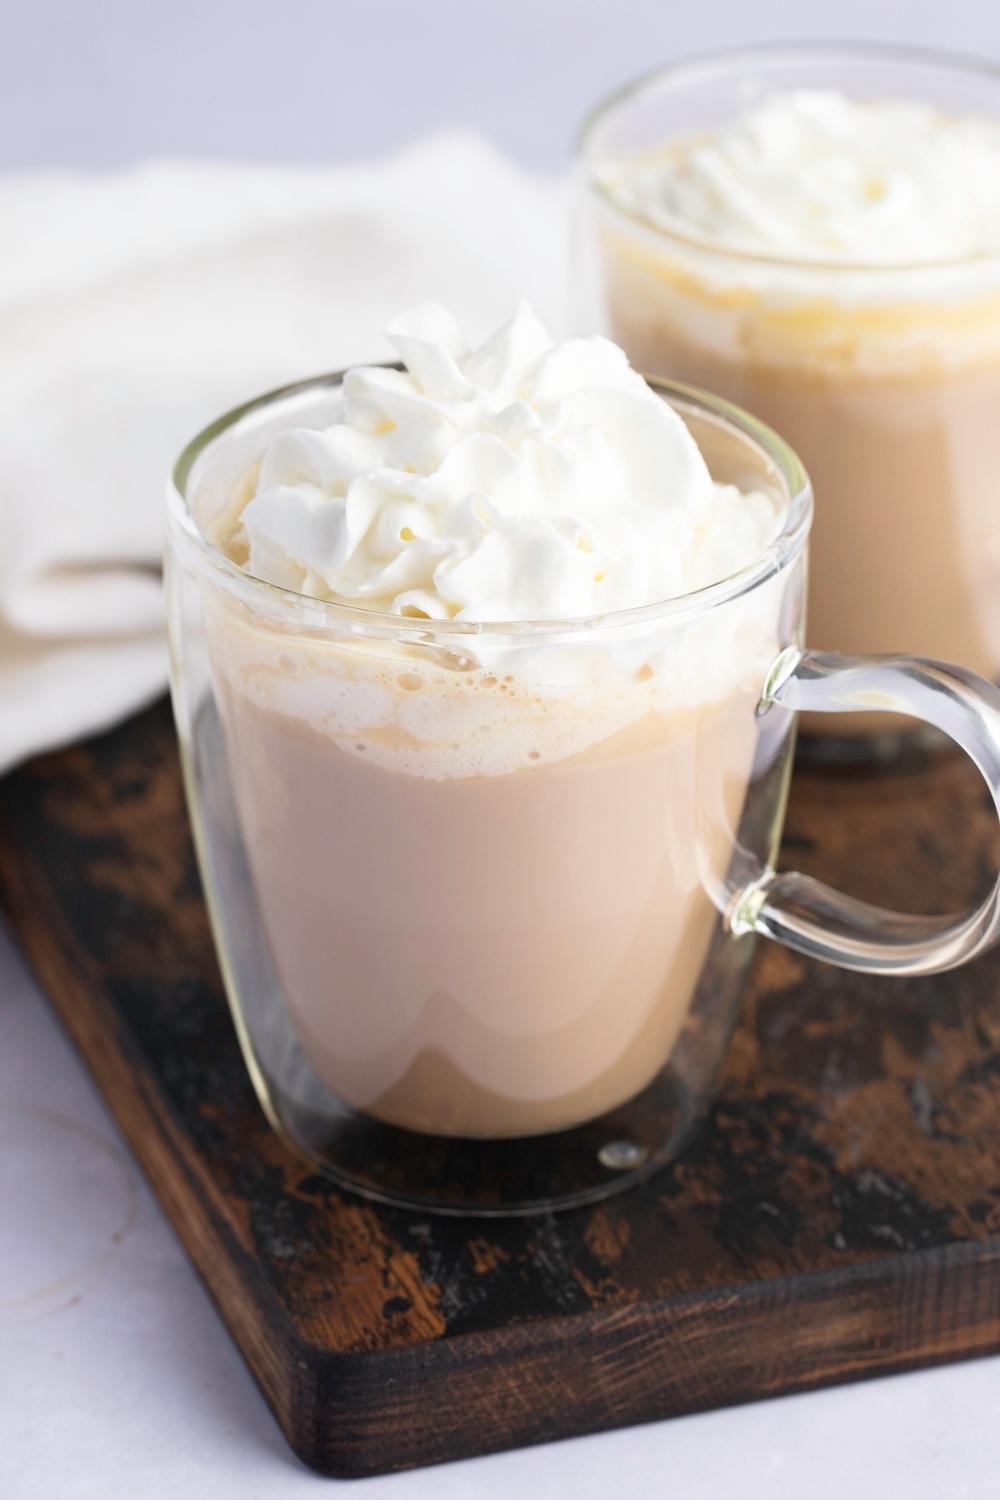 Homemade Starbucks White Chocolate Mocha with Whipped Cream